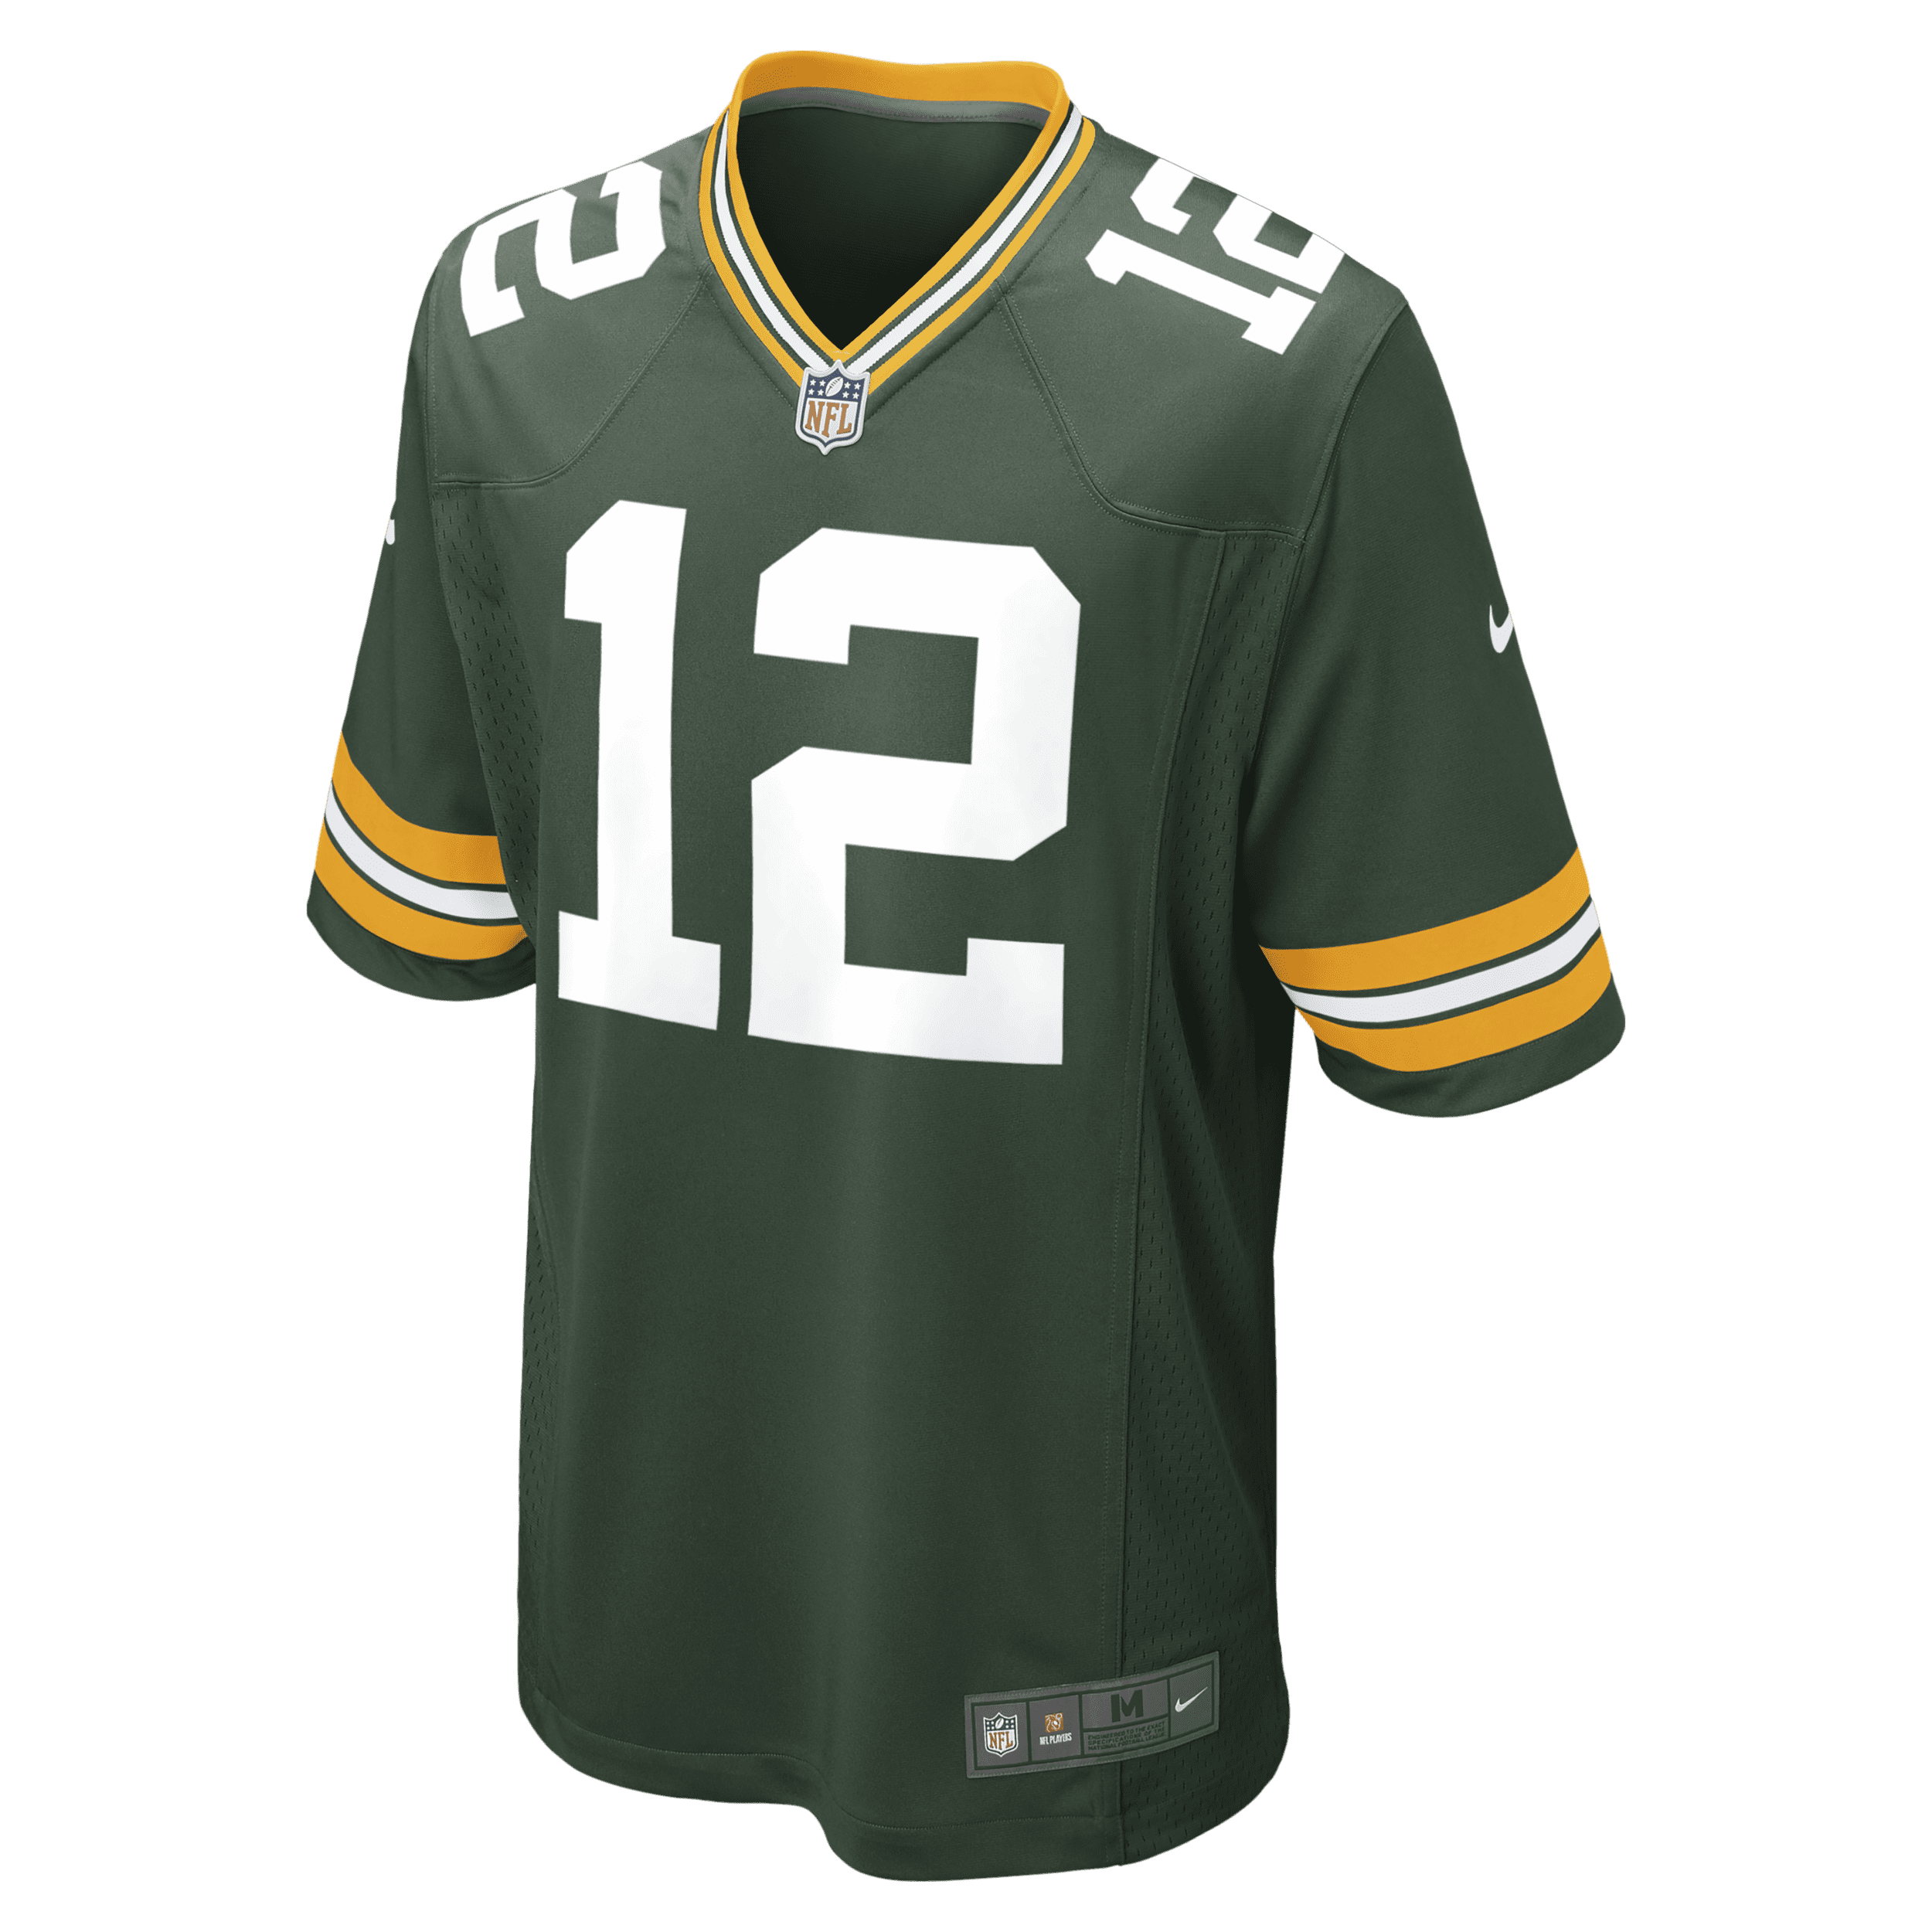 Nike NFL Green Bay Packers (Aaron Rodgers) American-football-wedstrijdjersey voor heren Groen